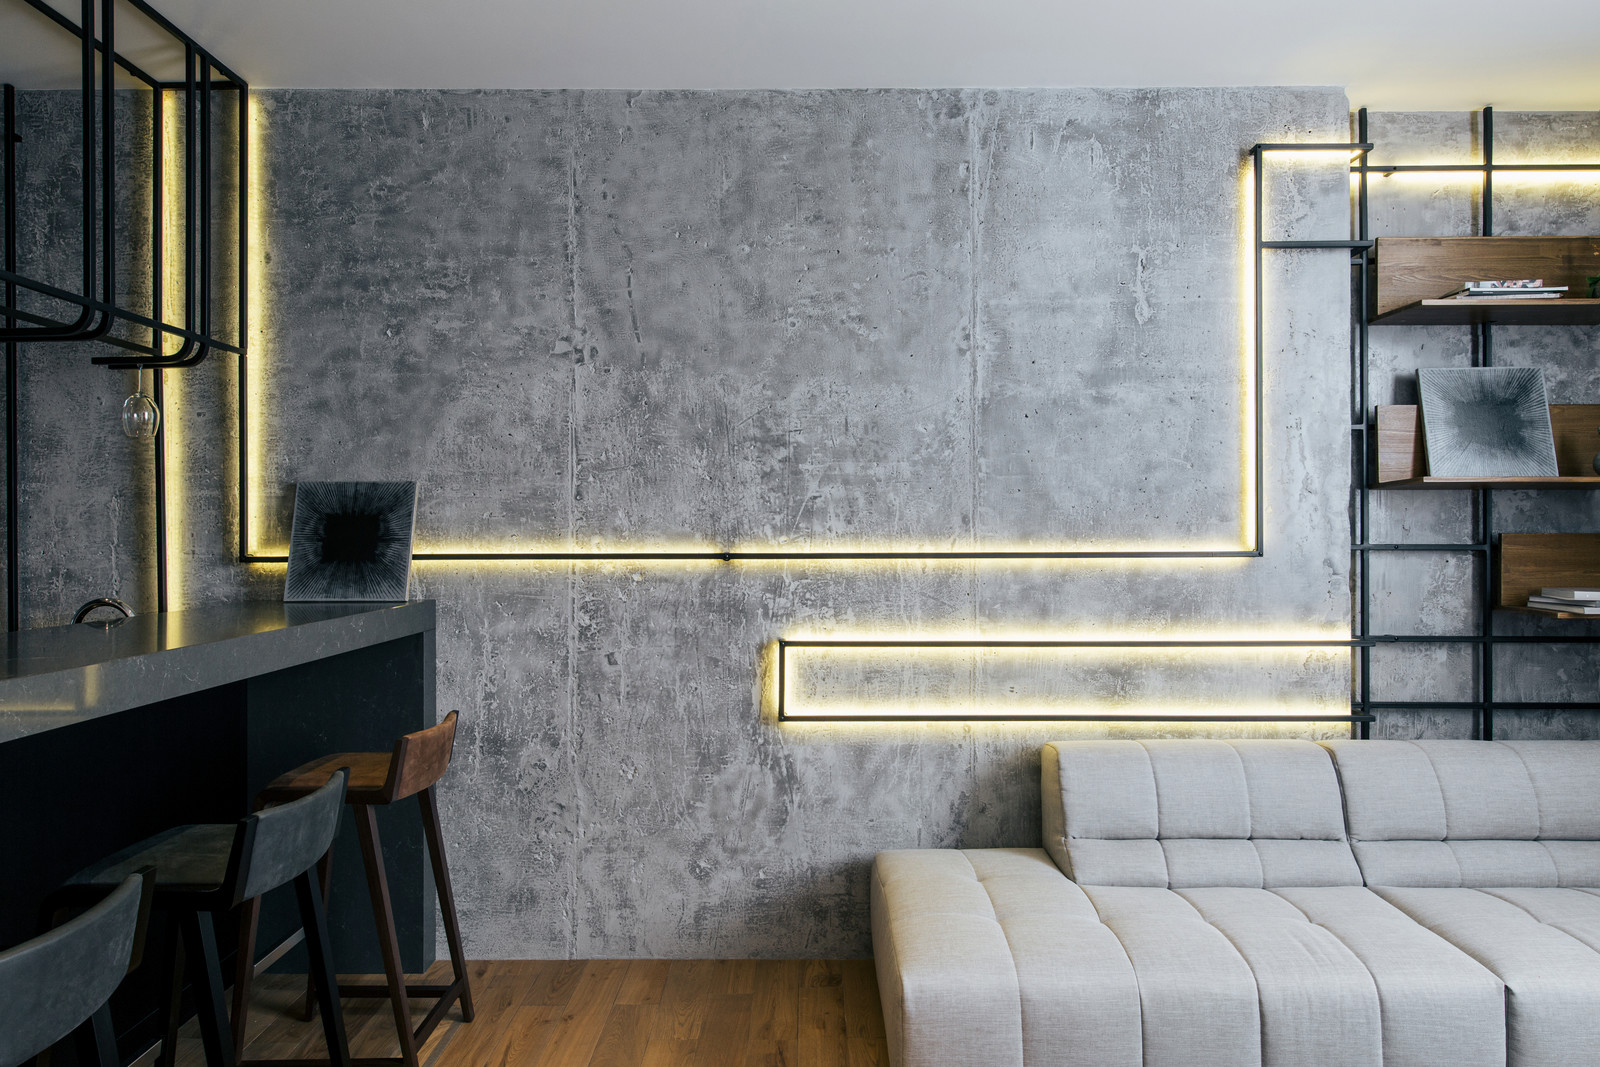 Современный дизайн интерьера квартиры в Киеве